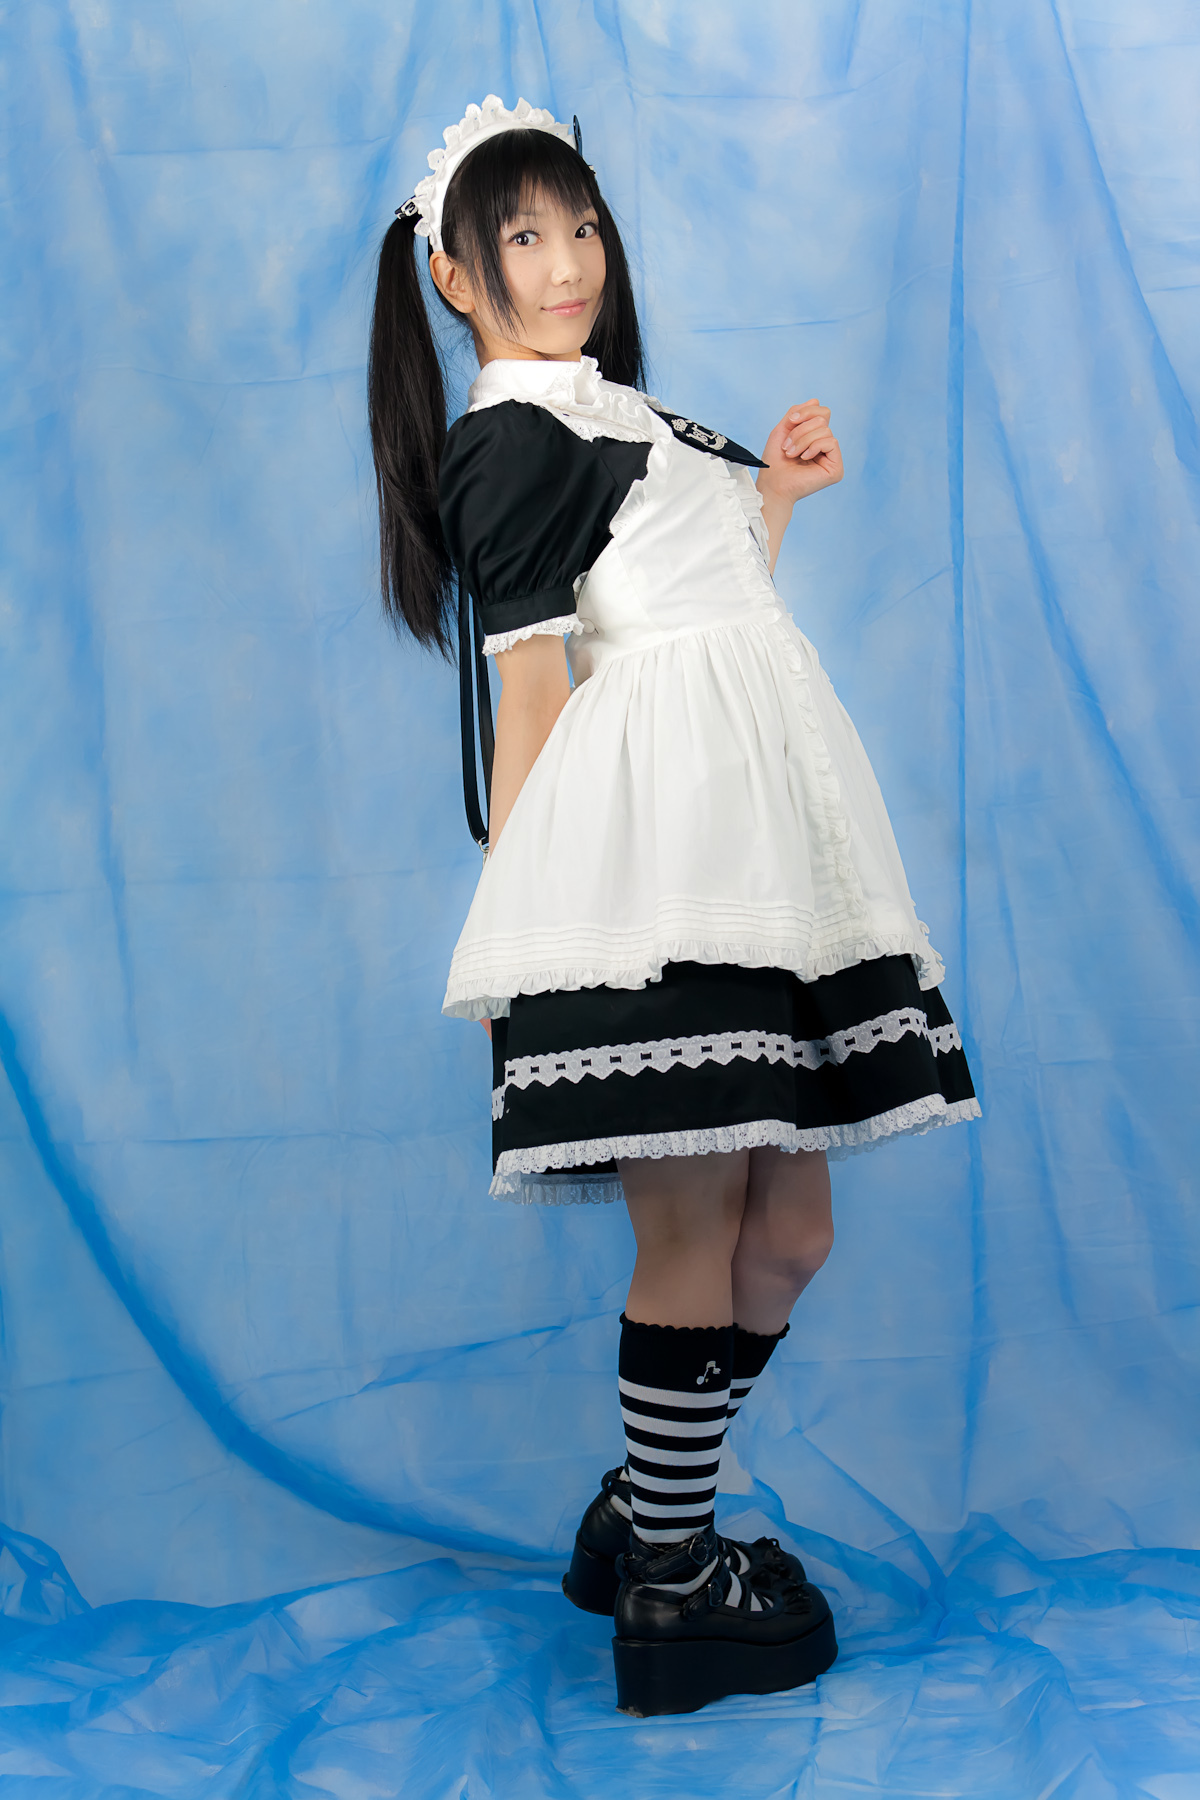 日本美少女写真 莲 下限少女 二 COSER合集之七 cosplay 套图